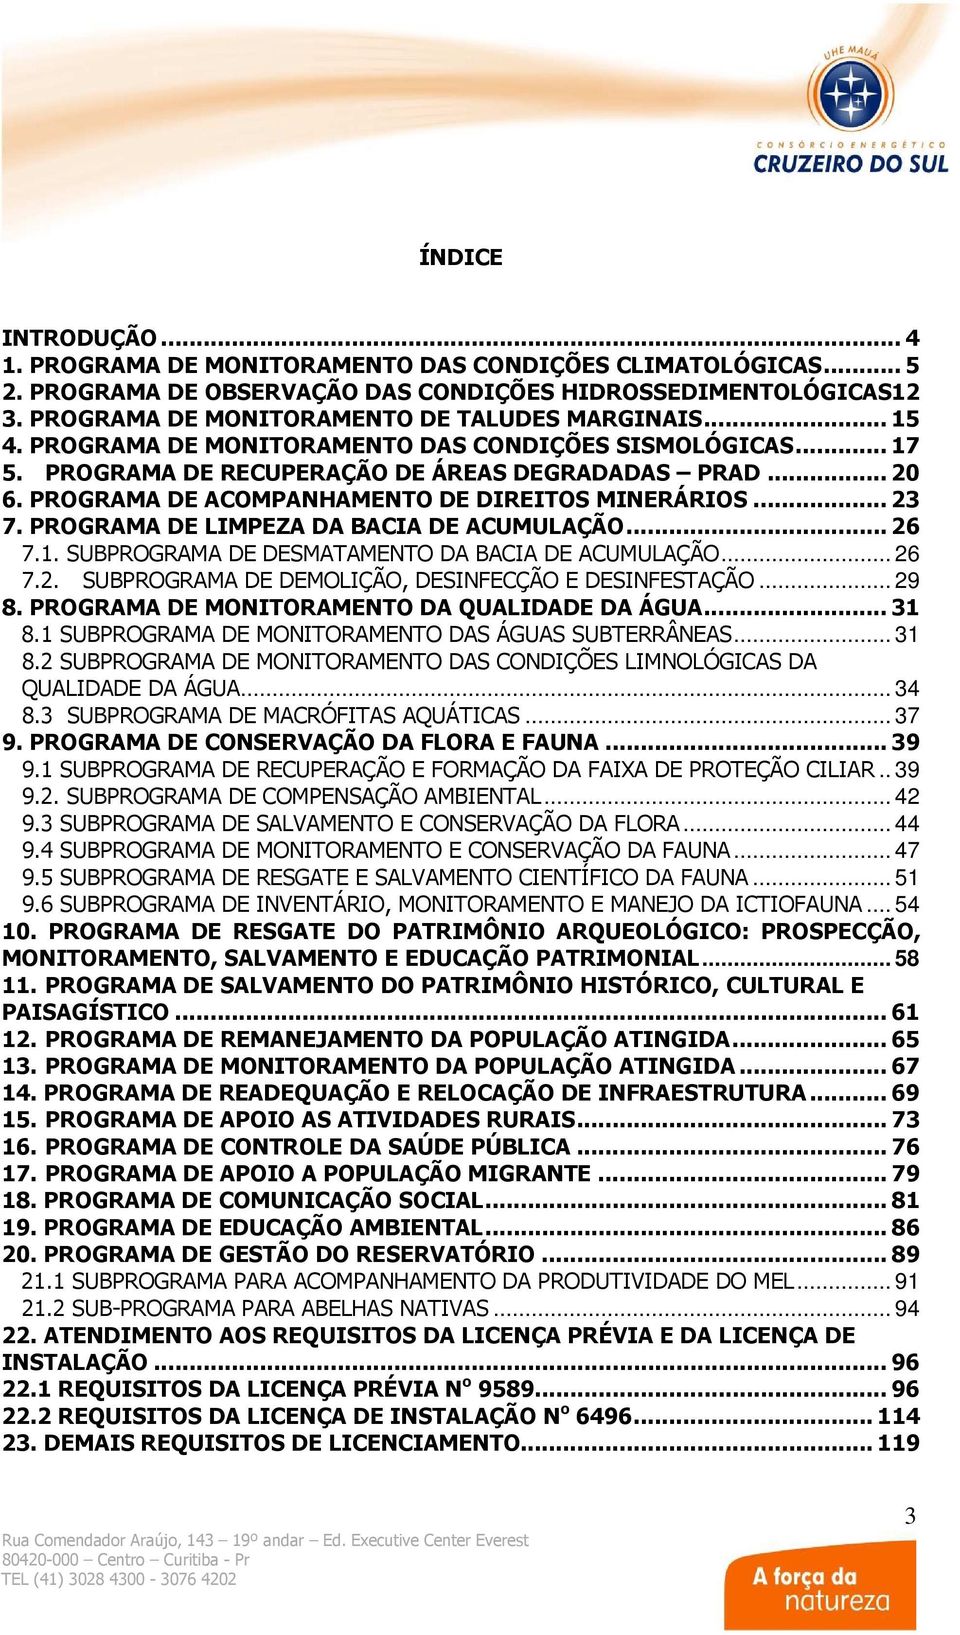 PROGRAMA DE ACOMPANHAMENTO DE DIREITOS MINERÁRIOS... 23 7. PROGRAMA DE LIMPEZA DA BACIA DE ACUMULAÇÃO... 26 7.1. SUBPROGRAMA DE DESMATAMENTO DA BACIA DE ACUMULAÇÃO... 26 7.2. SUBPROGRAMA DE DEMOLIÇÃO, DESINFECÇÃO E DESINFESTAÇÃO.